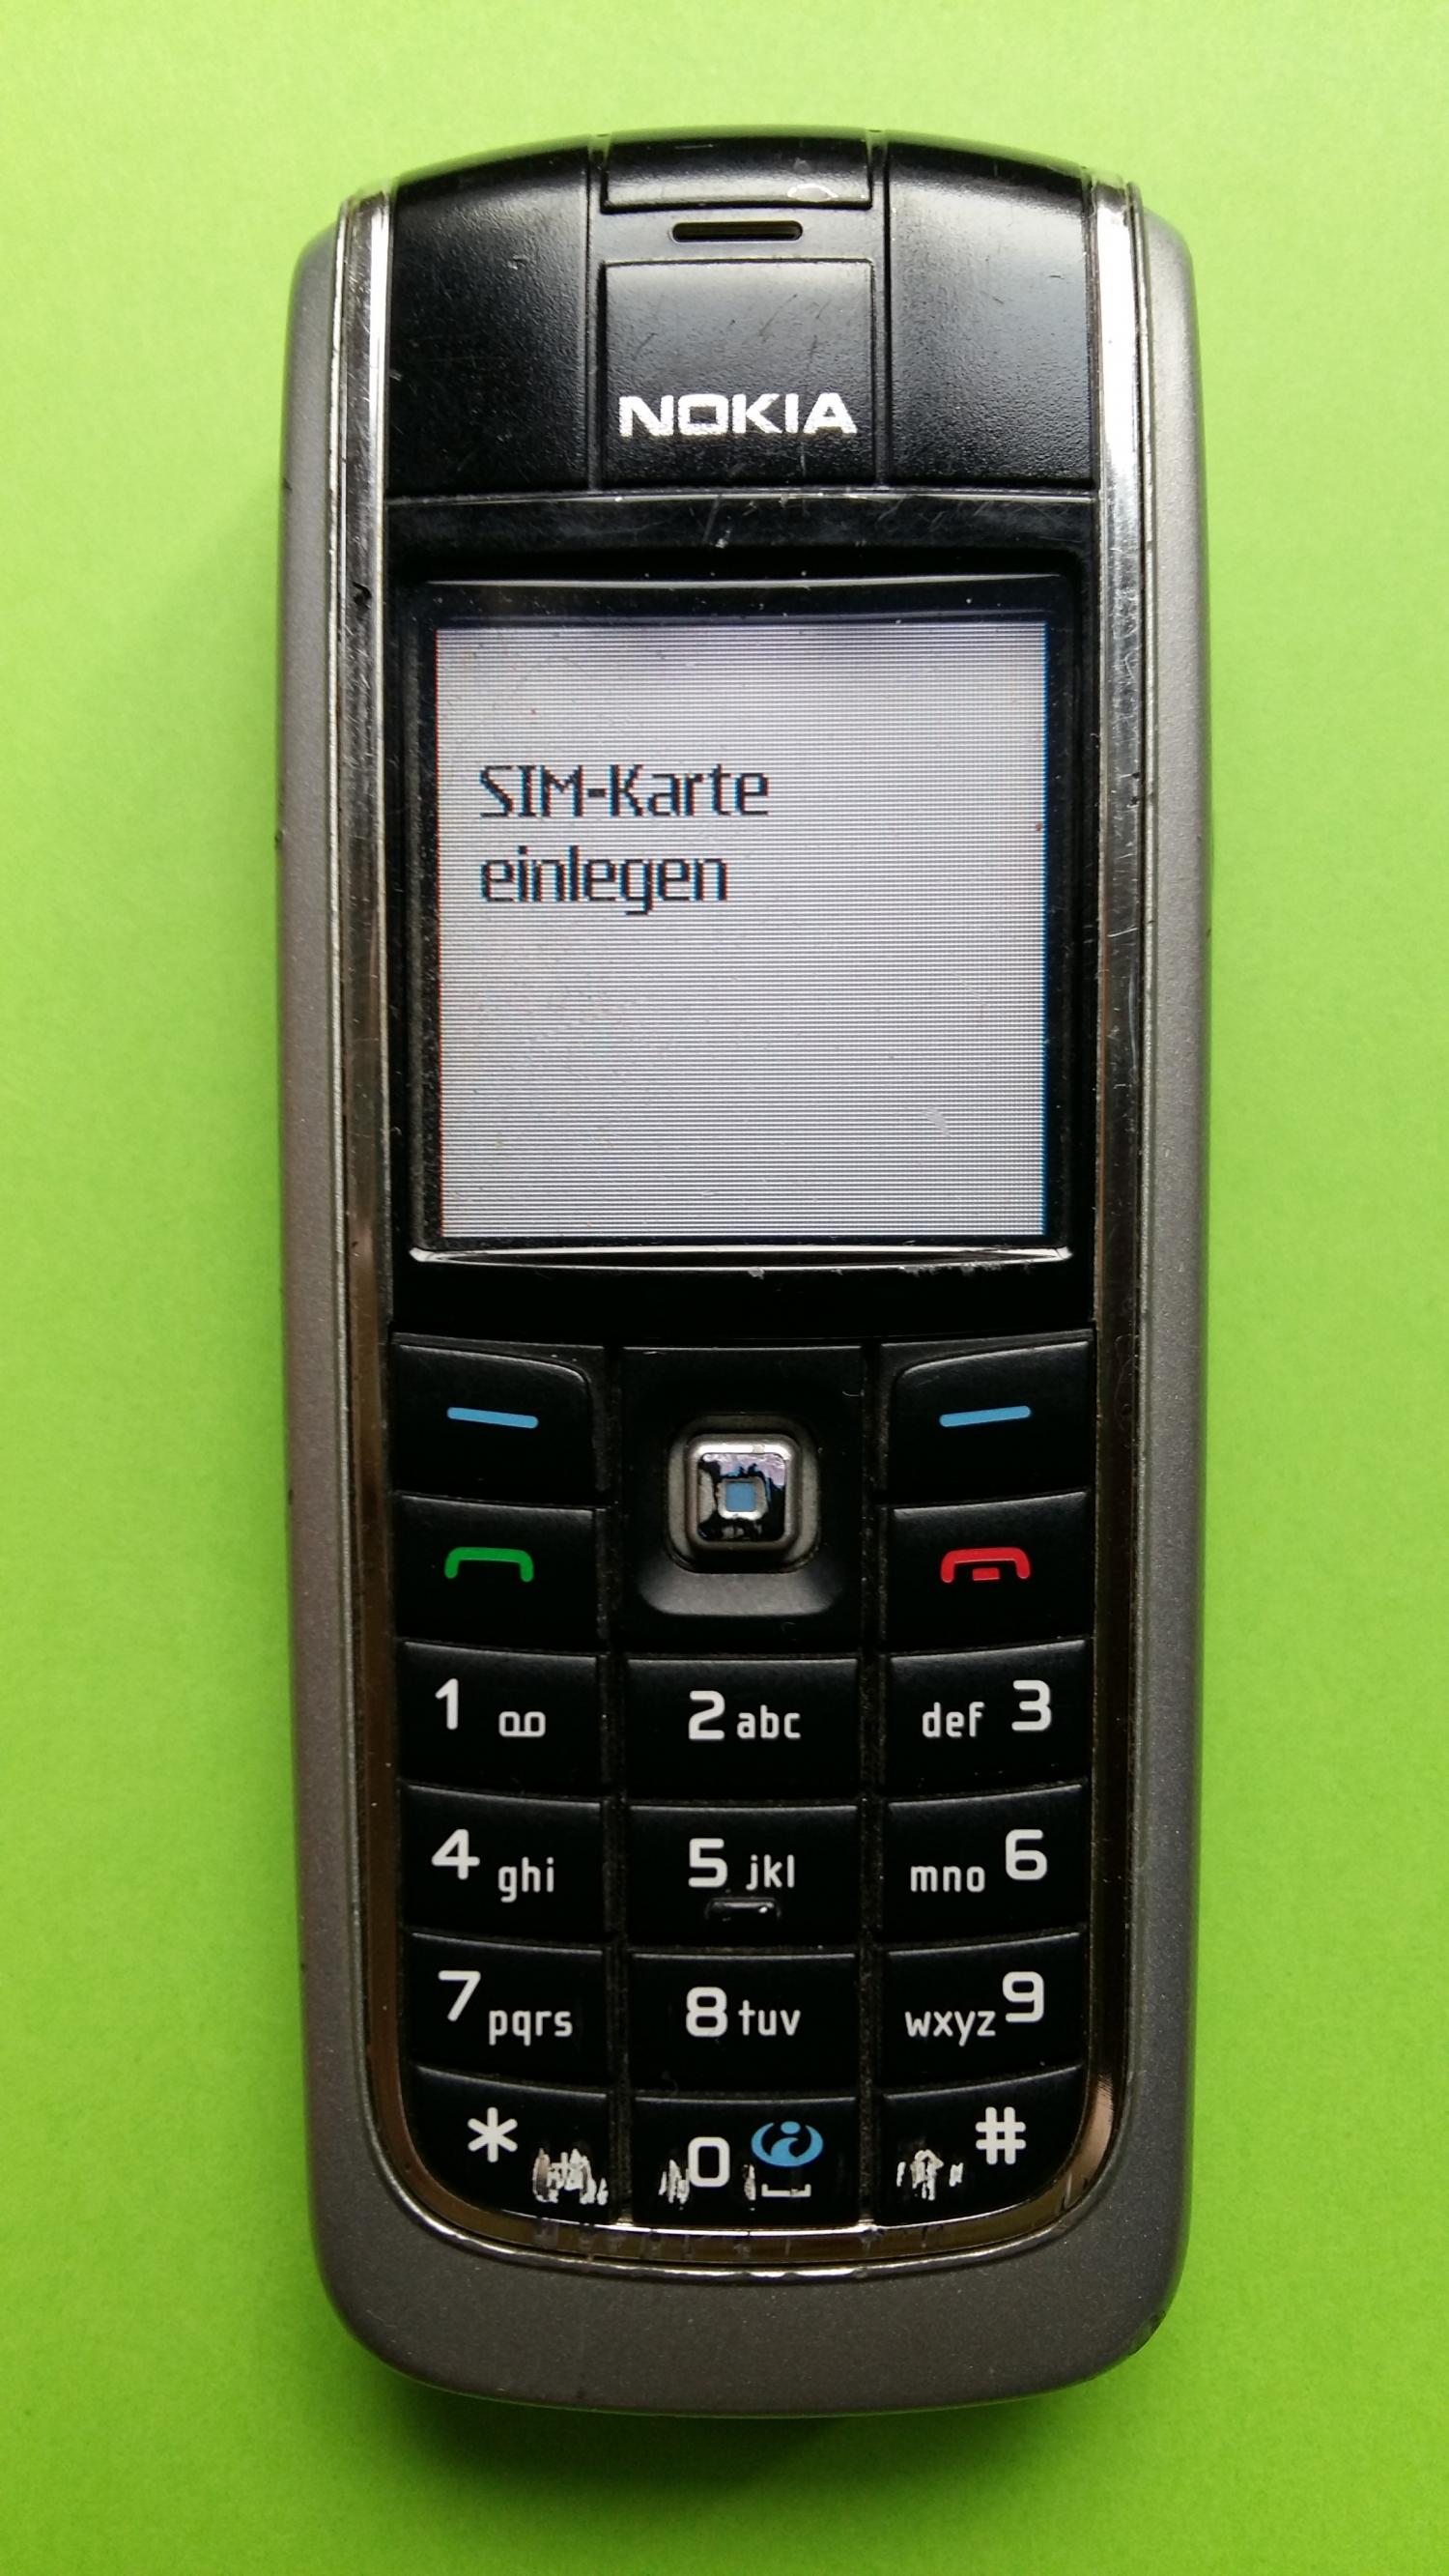 image-7307498-Nokia 6021 (1)1.jpg